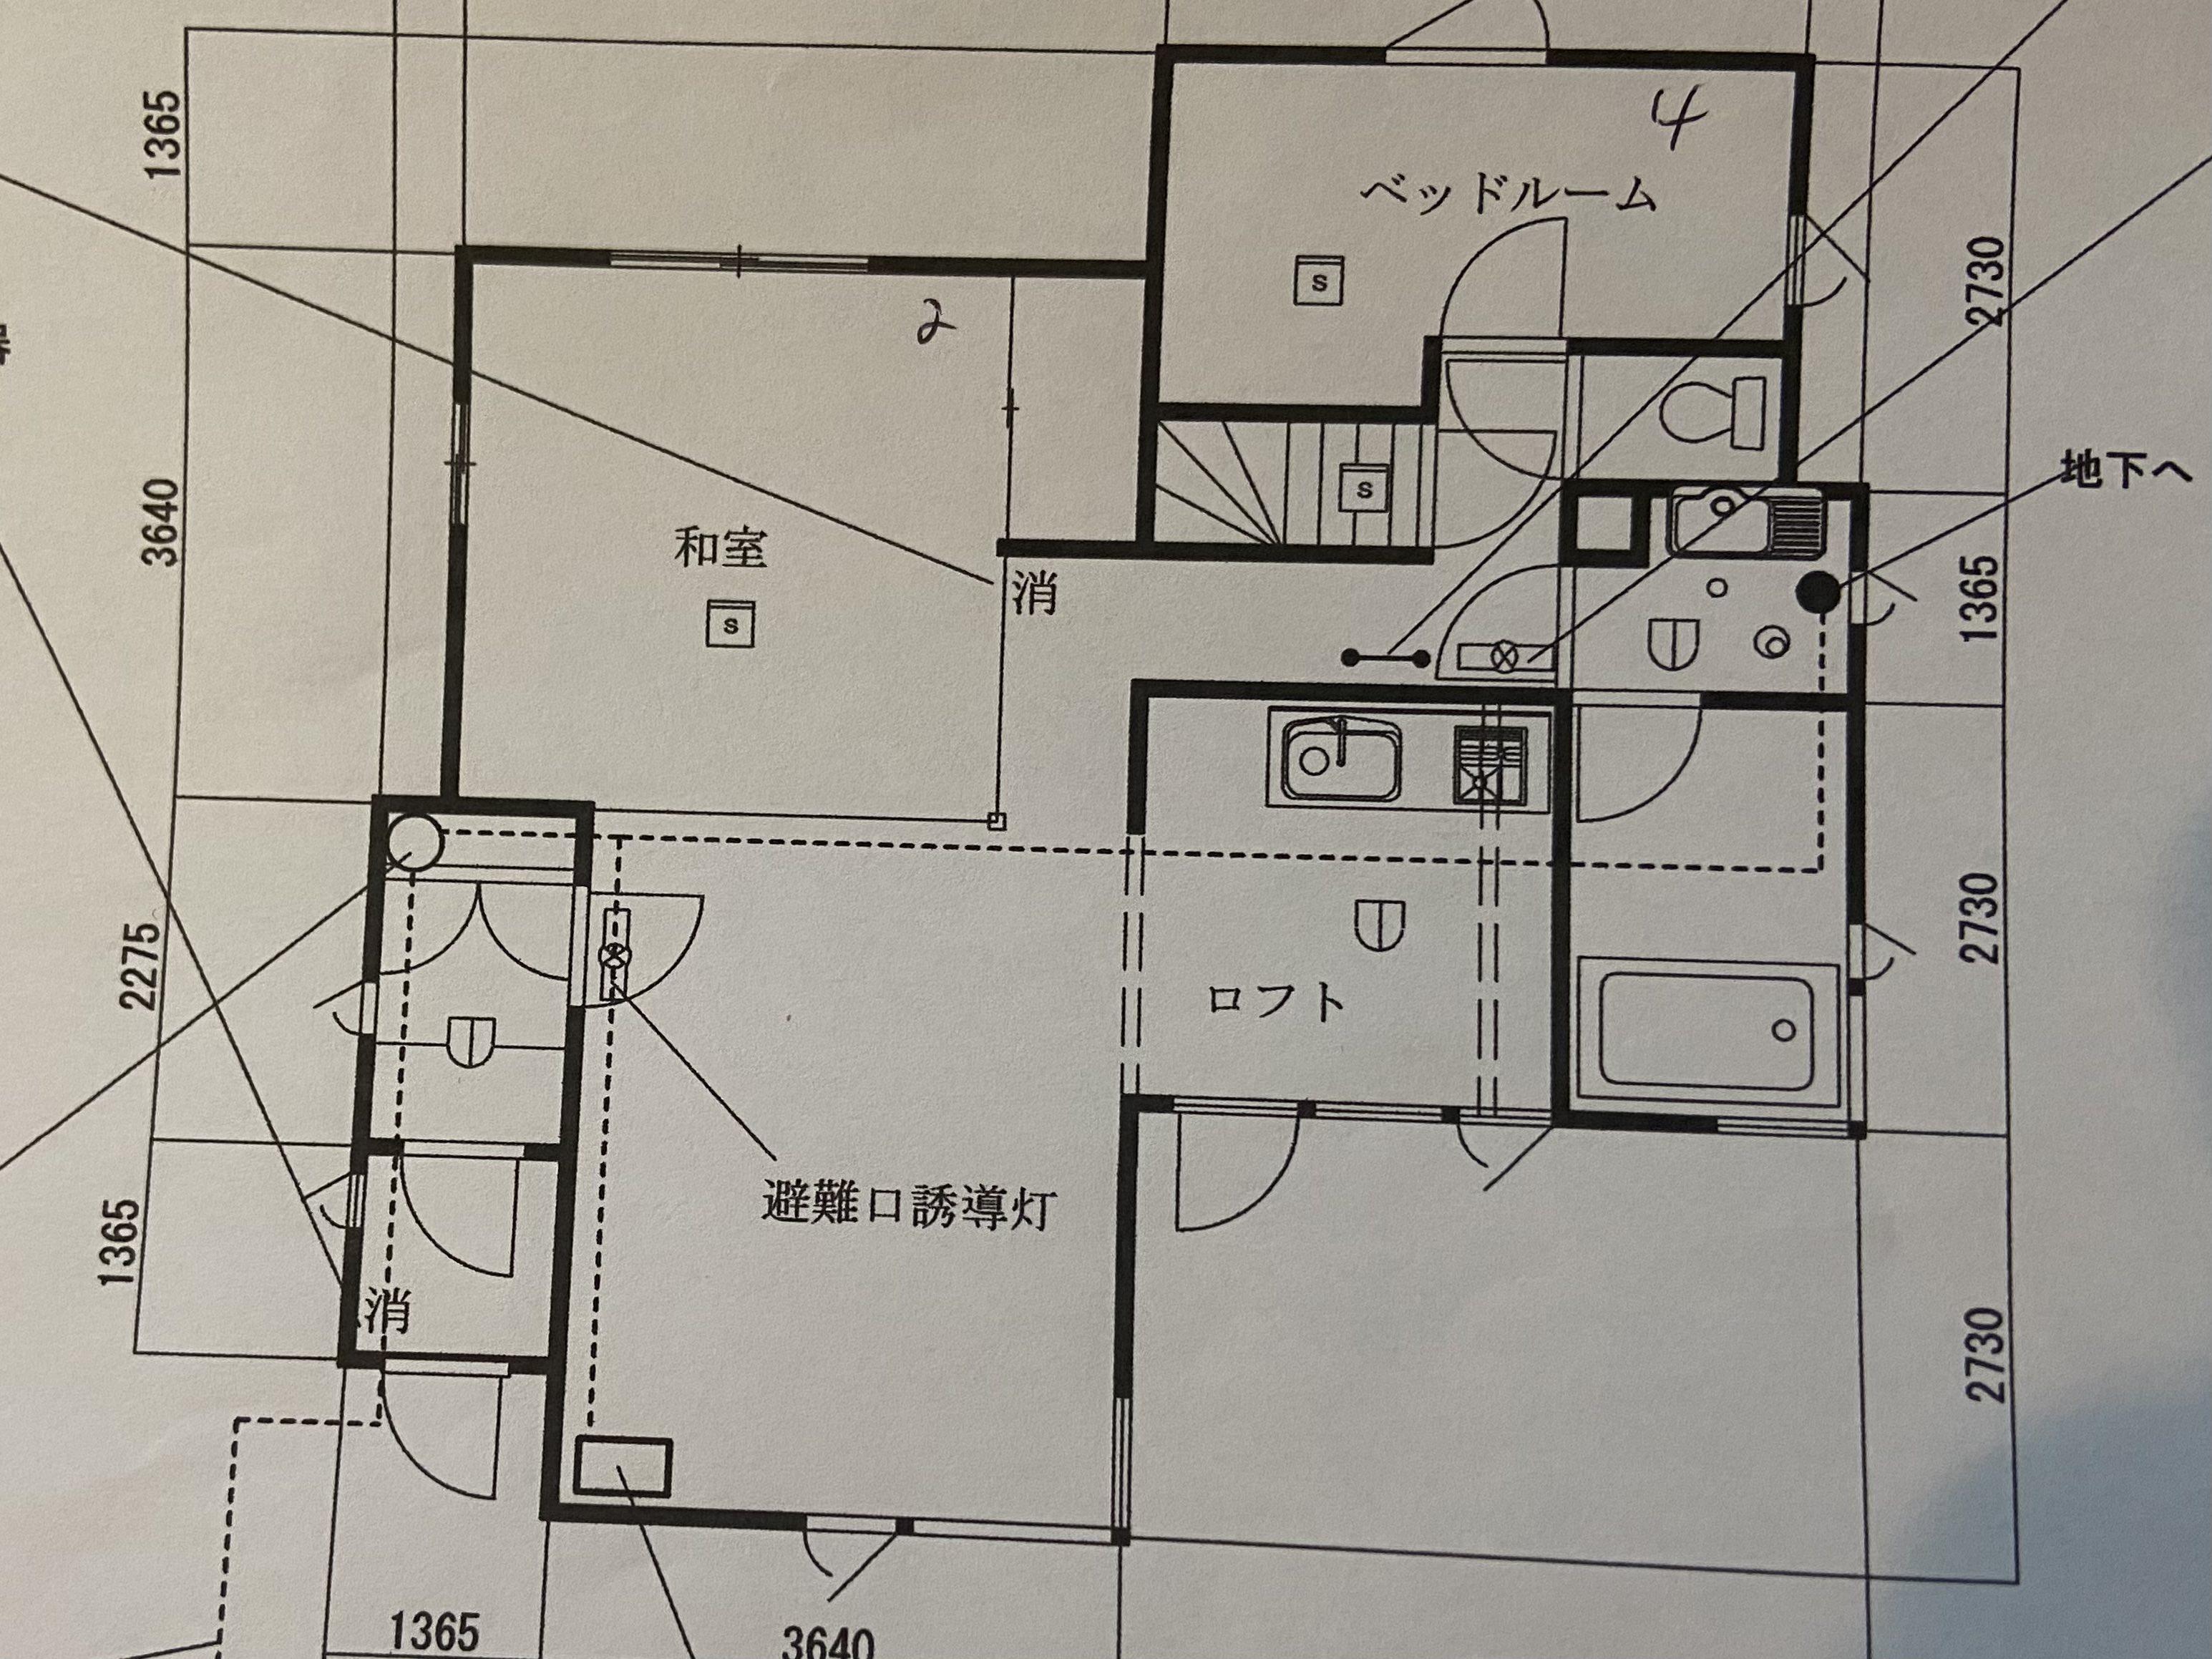 Floor plans for Annupuri Retro lodge